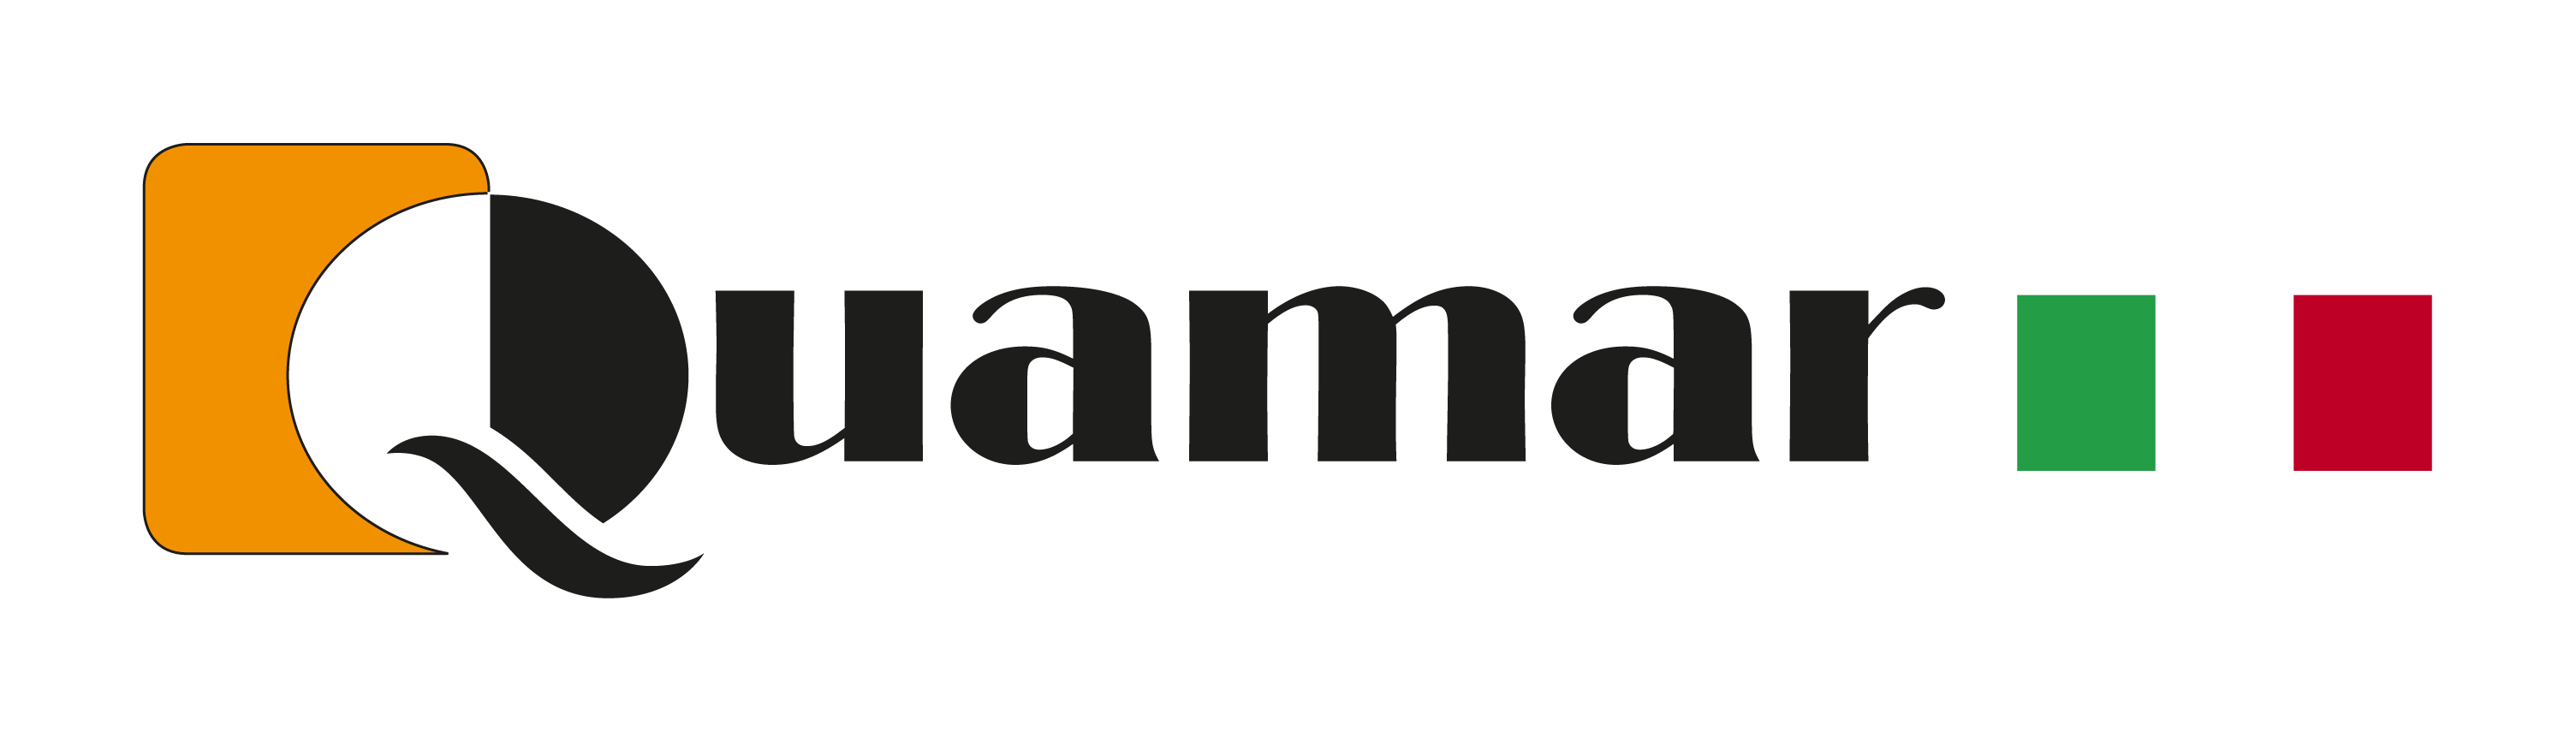 logo Quamar